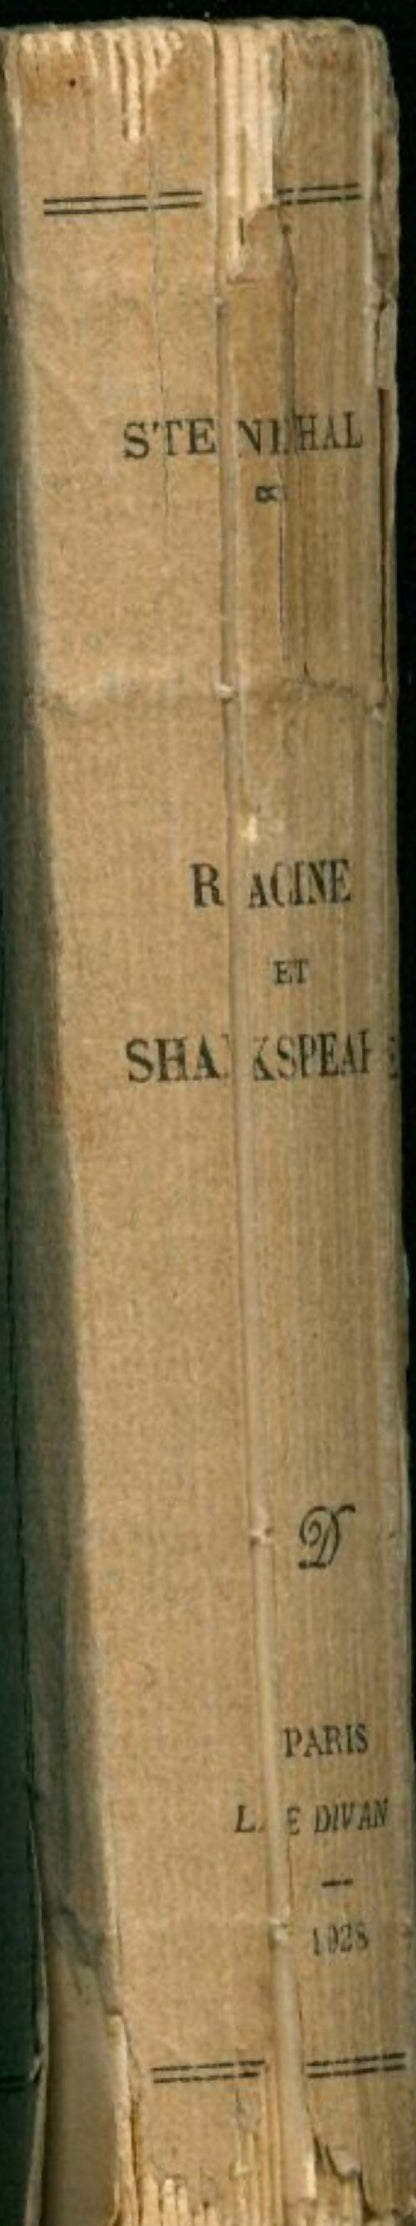 Racine et Shakspeare - Stendhal -  Le Divan poche - Livre